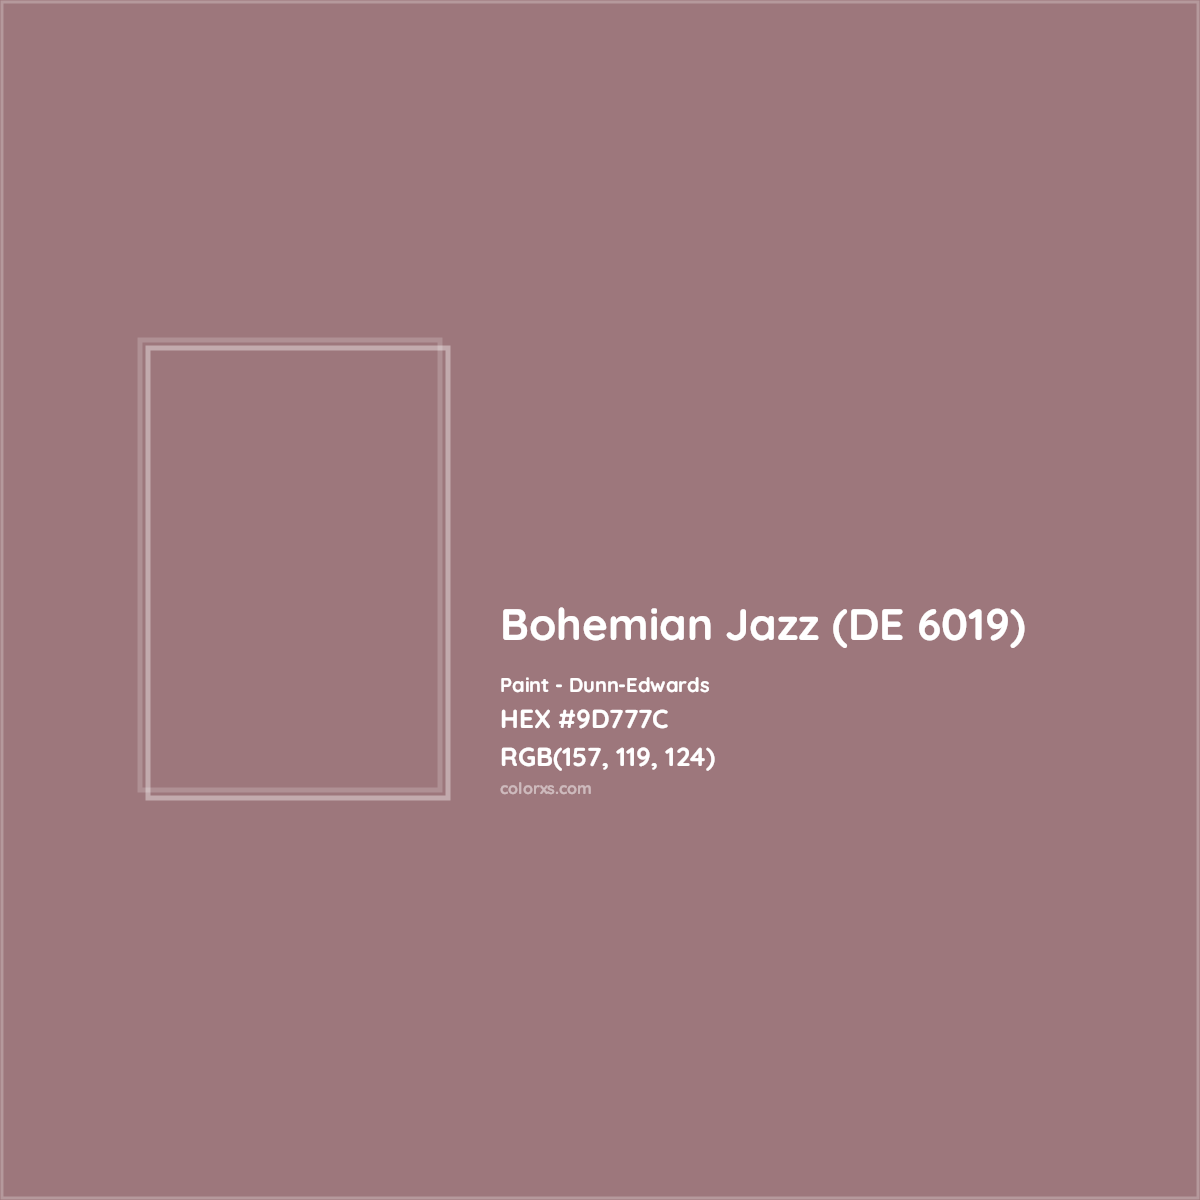 HEX #9D777C Bohemian Jazz (DE 6019) Paint Dunn-Edwards - Color Code